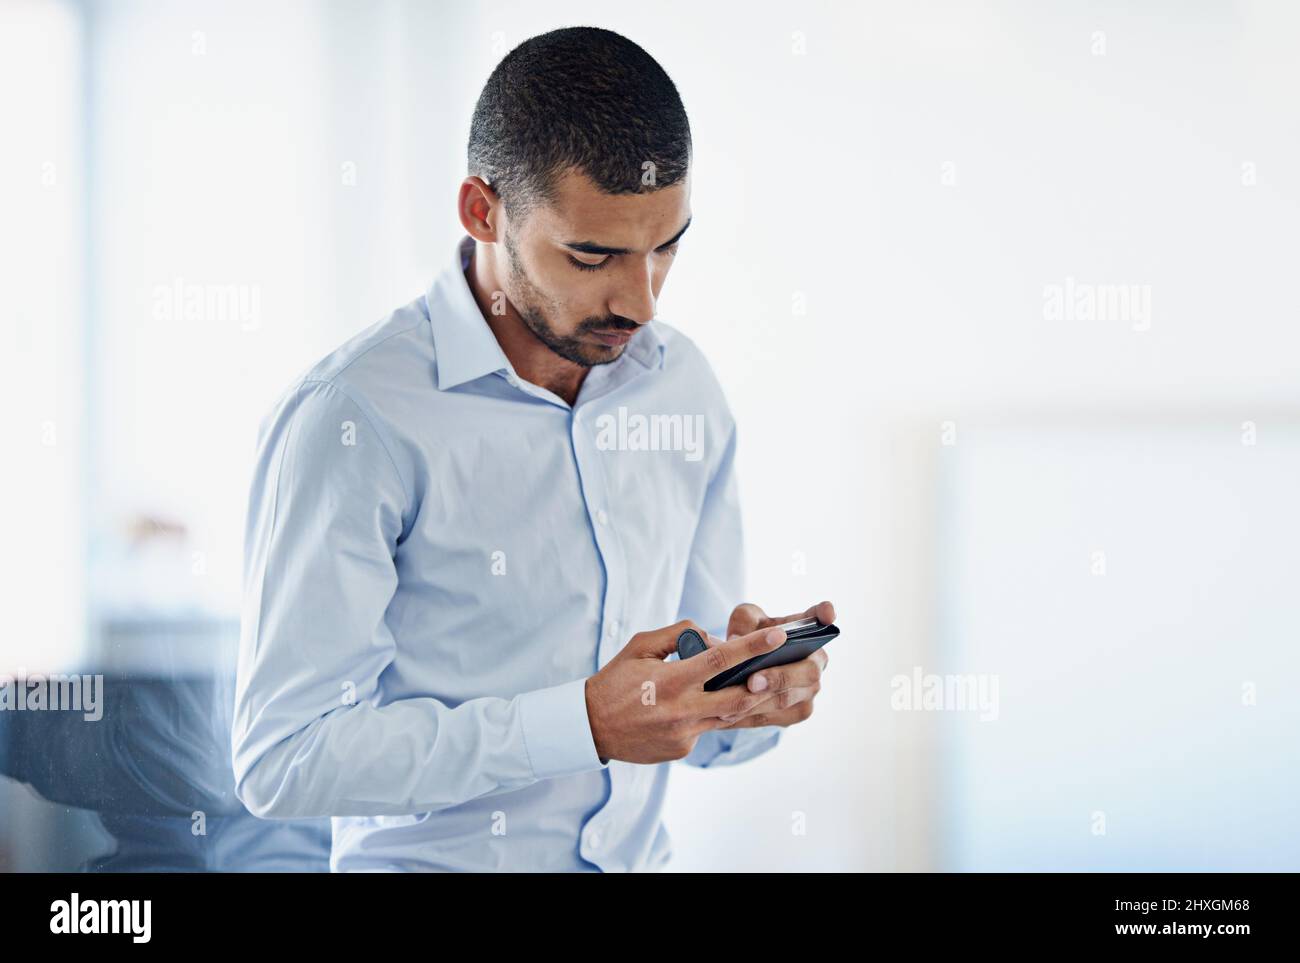 Garder ses contacts à jour. Photo d'un jeune homme d'affaires envoyant un message texte dans un bureau. Banque D'Images